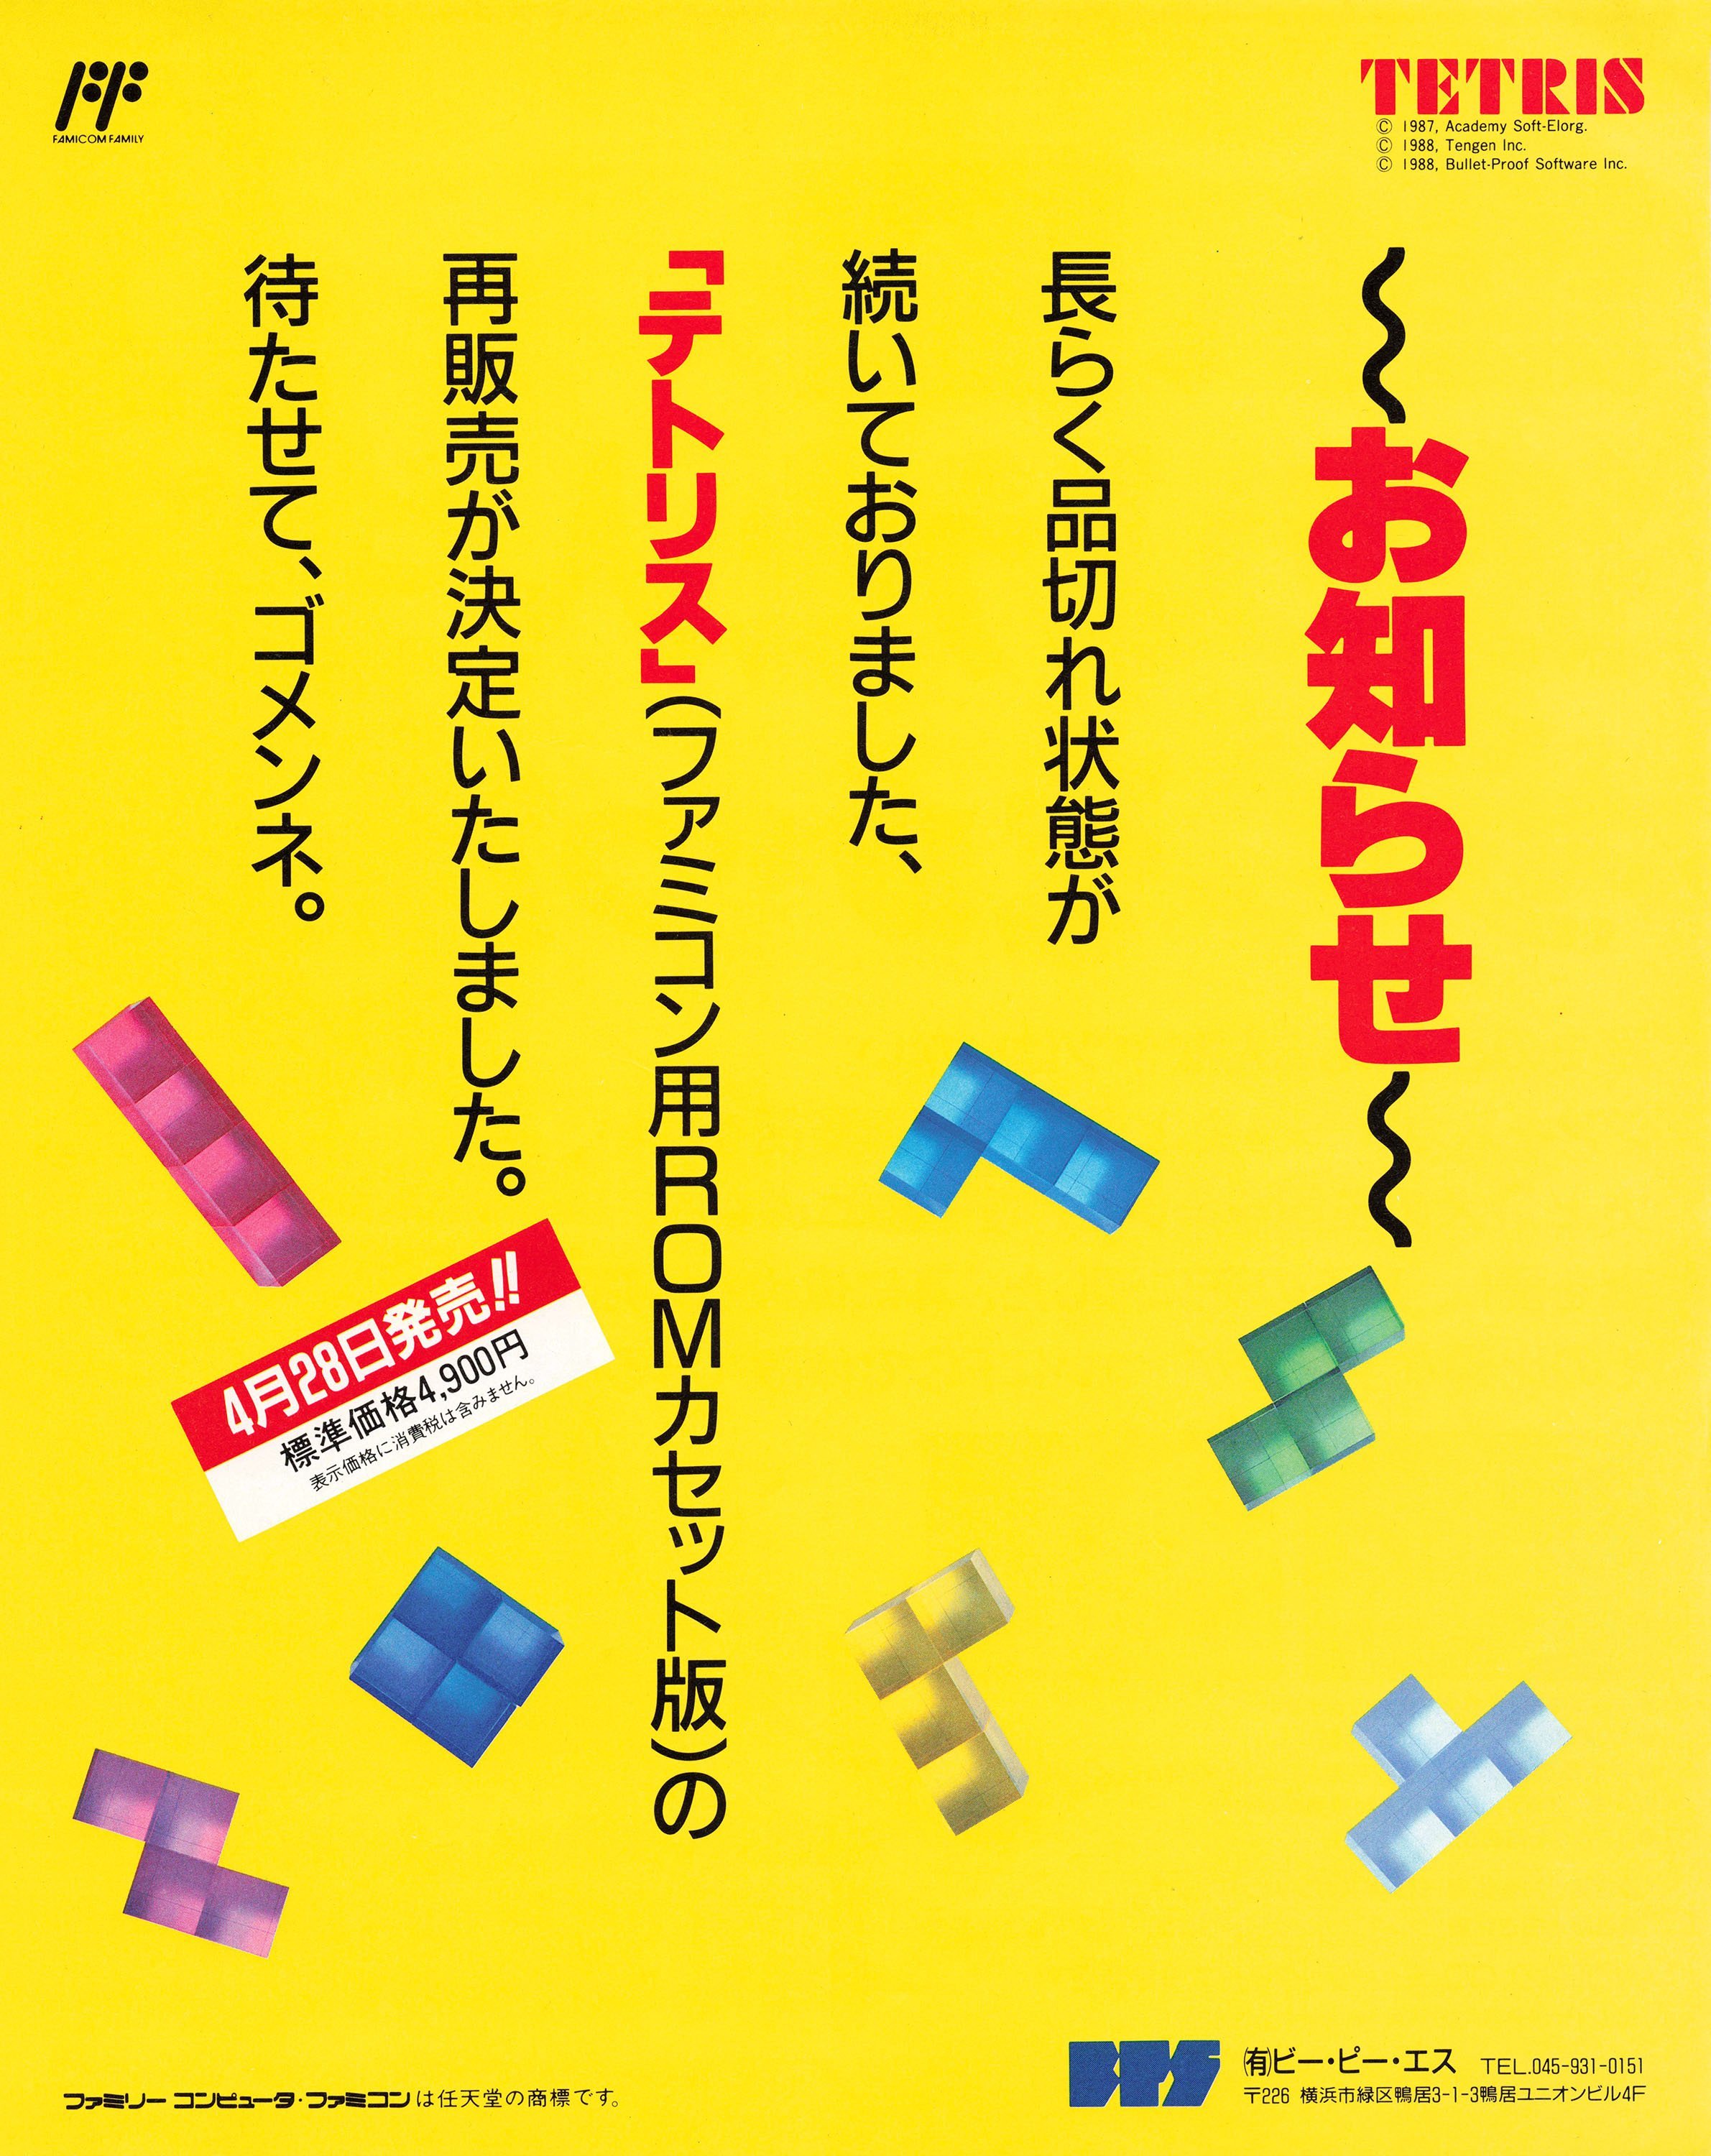 Tetris (Japan) (April 1989)